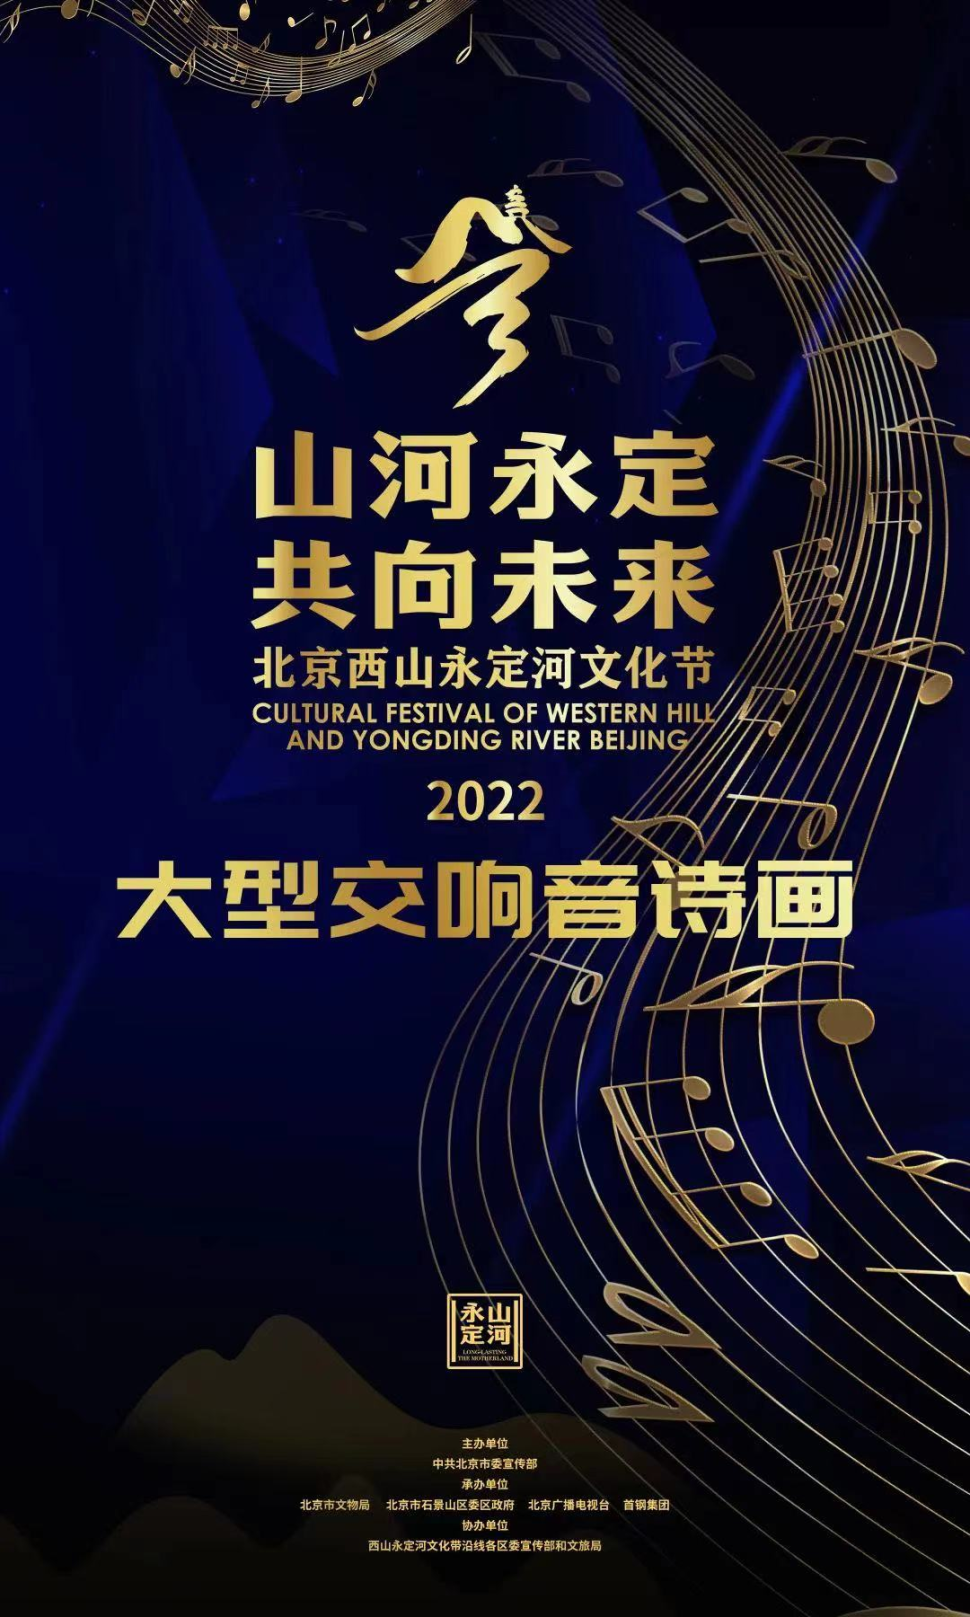 2022年北京西山永定河文化节开幕式暨“山河永定 共向未来”大型交响音诗画即将开启